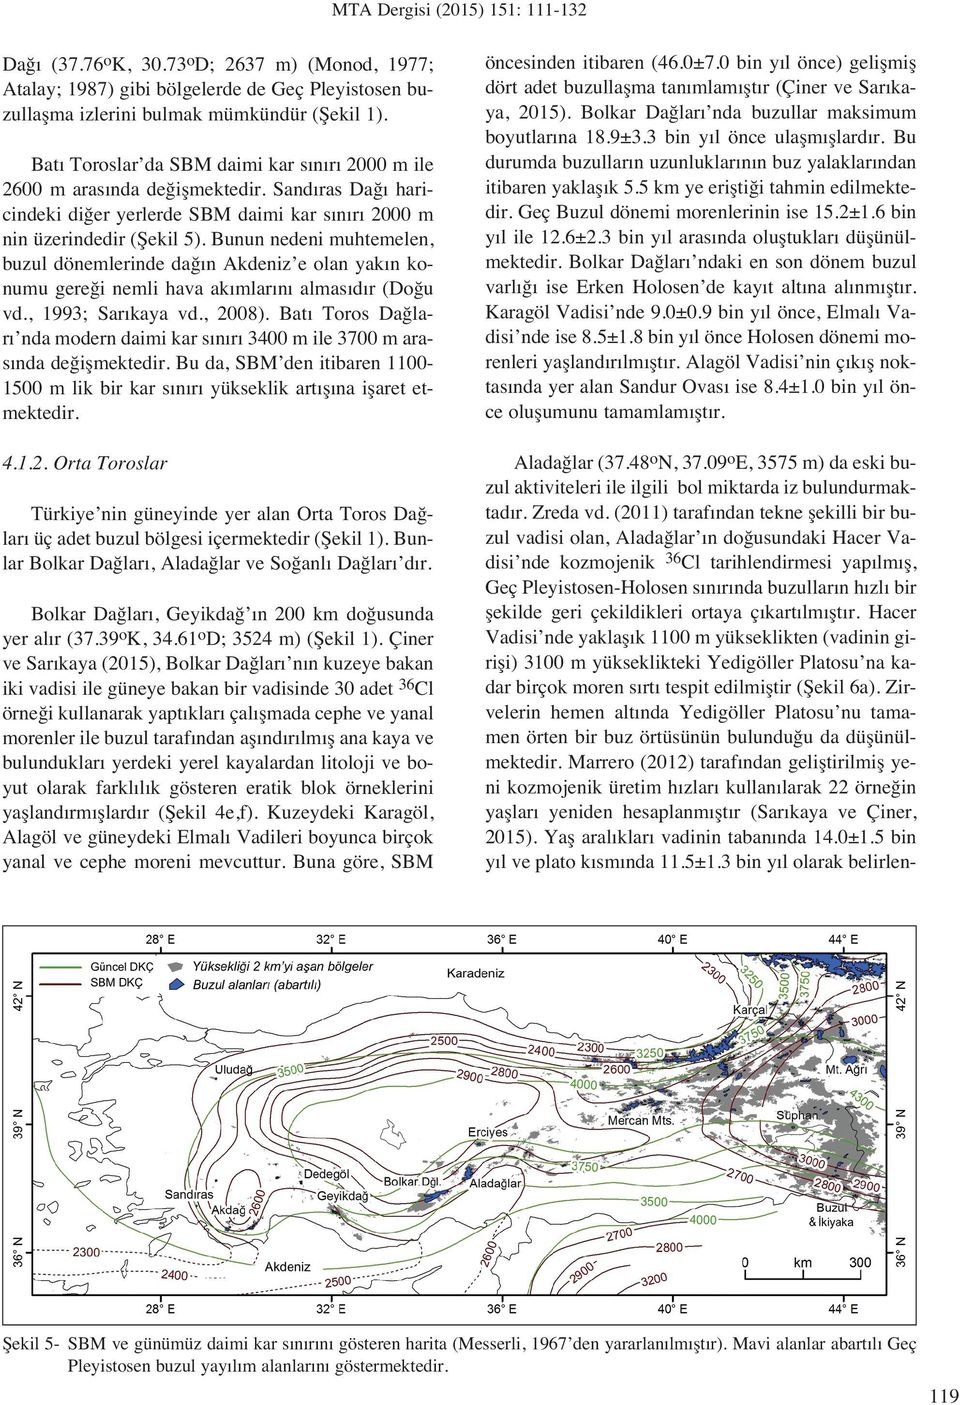 Bunun nedeni muhtemelen, buzul dönemlerinde da n Akdeniz e olan yak n konumu gere i nemli hava ak mlar n almas d r (Do u vd., 1993; Sar kaya vd., 2008).